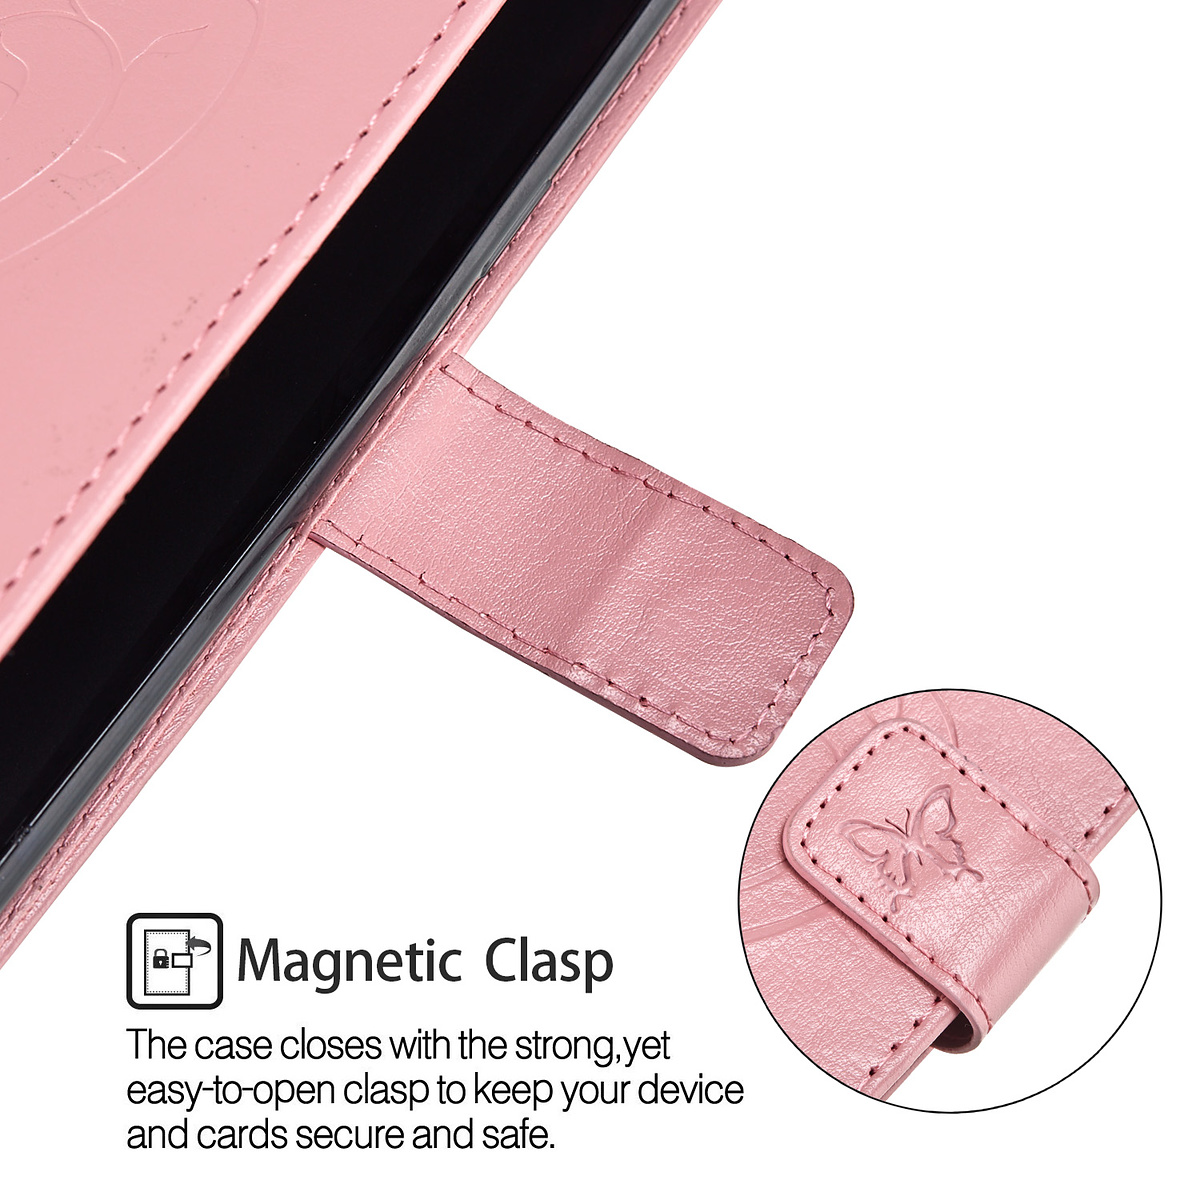 Läderfodral med vristband och stöd, Samsung Galaxy S9, rosa